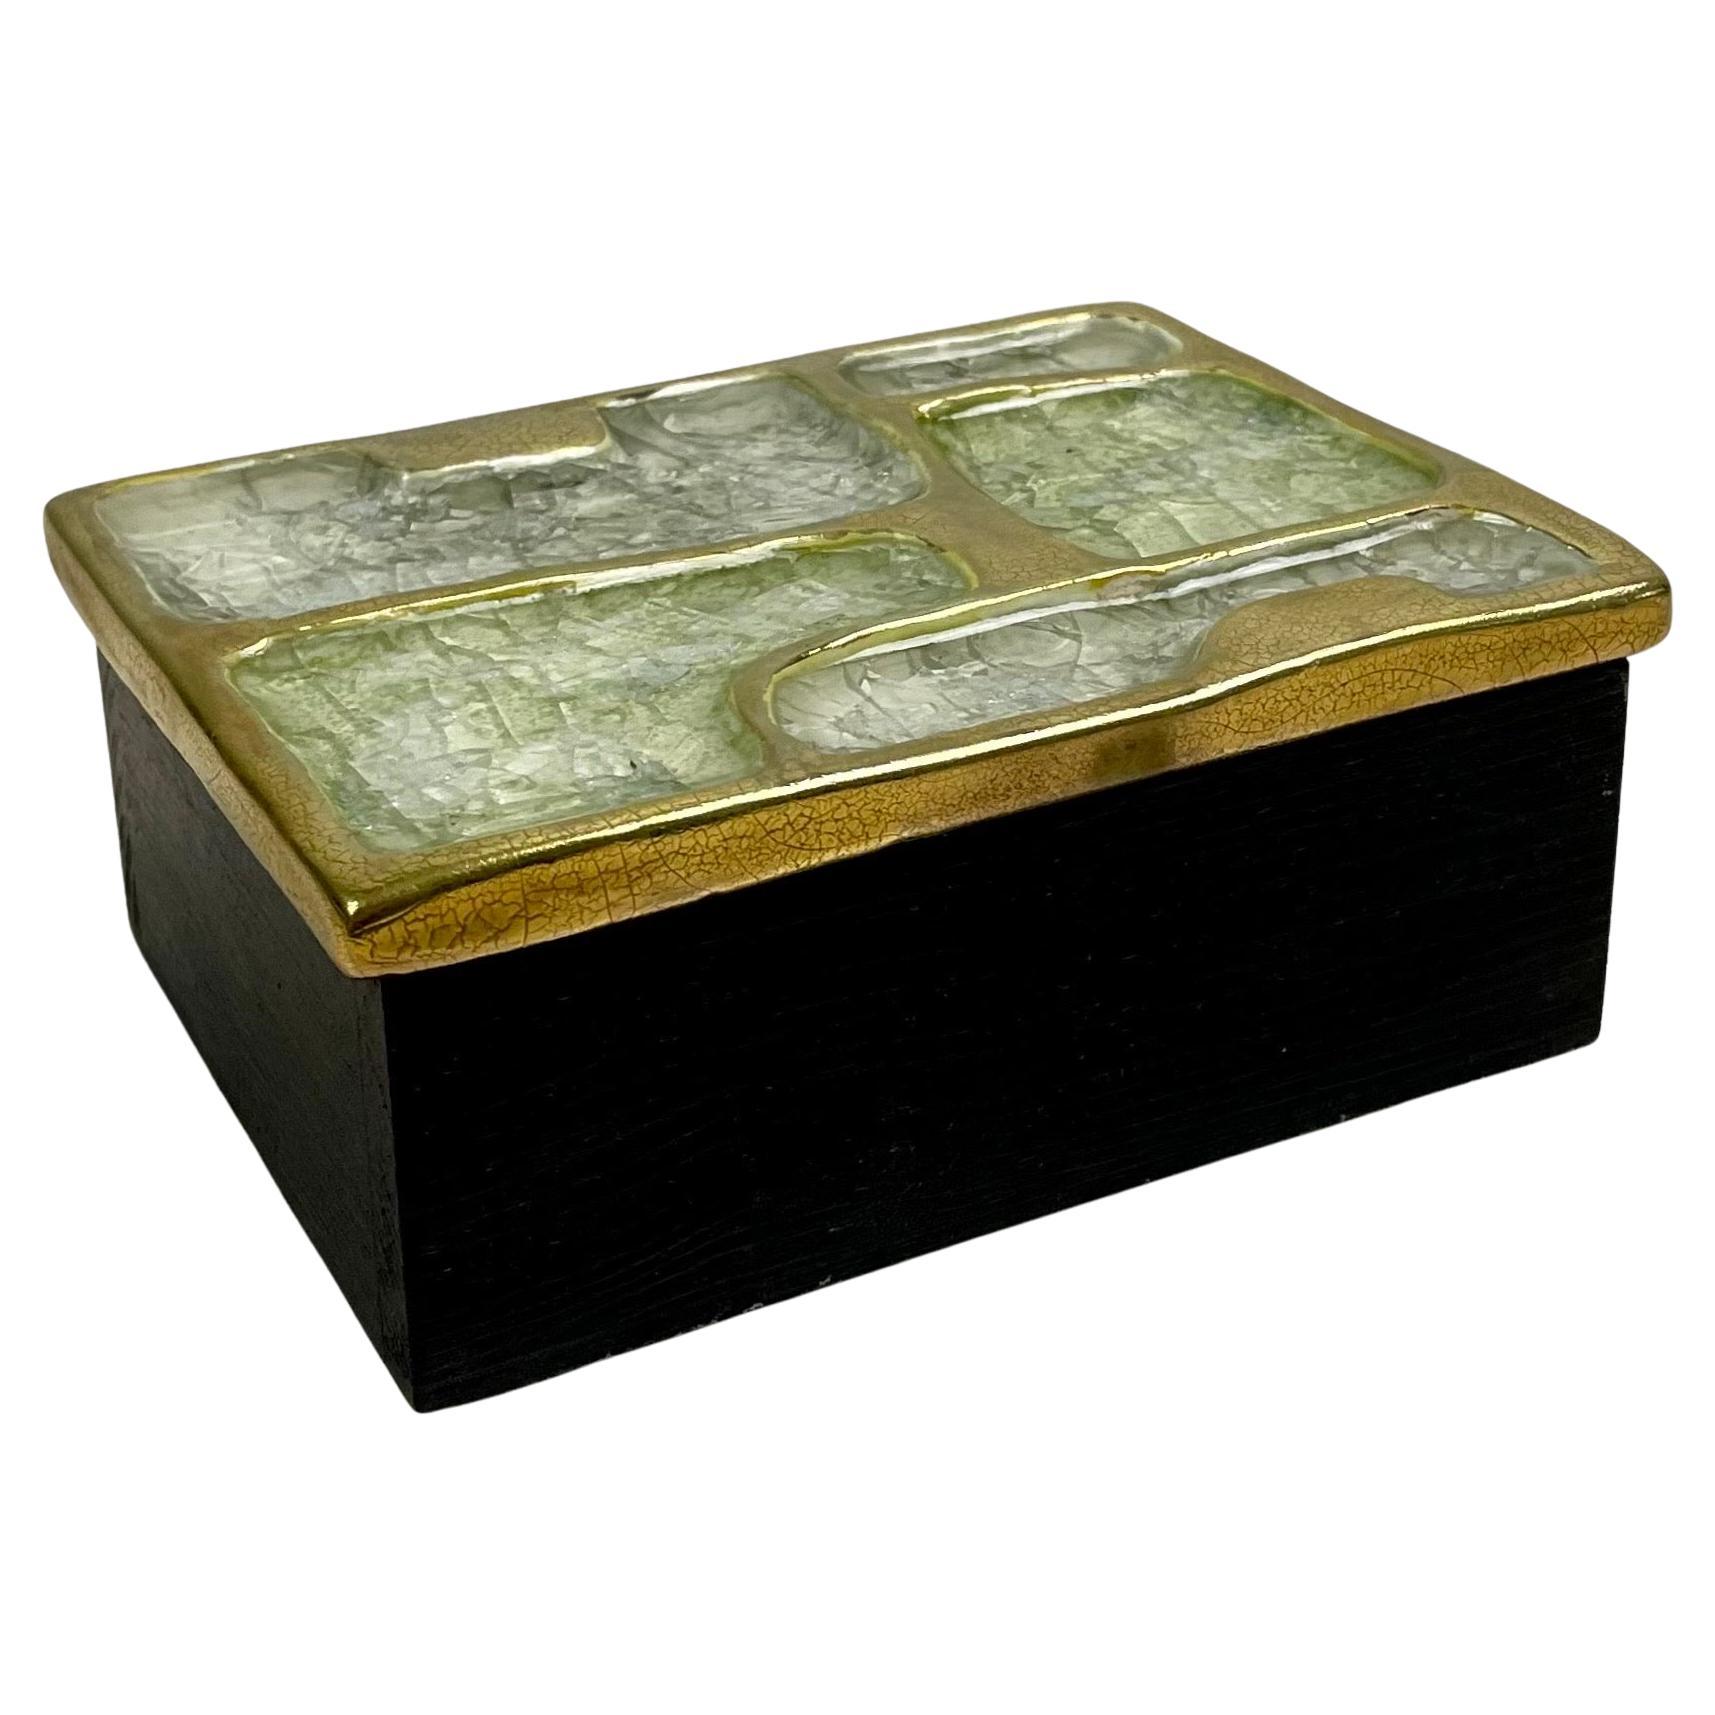 Boîte à secrets, boîte à bijoux, boîte de rangement, rangement rectangulaire avec couvercle en céramique émaillée dans les tons or, blanc et pellucide et base en bois, par Mithé Espelt.
La boîte est décorée de formes géométriques. Cette boîte donne